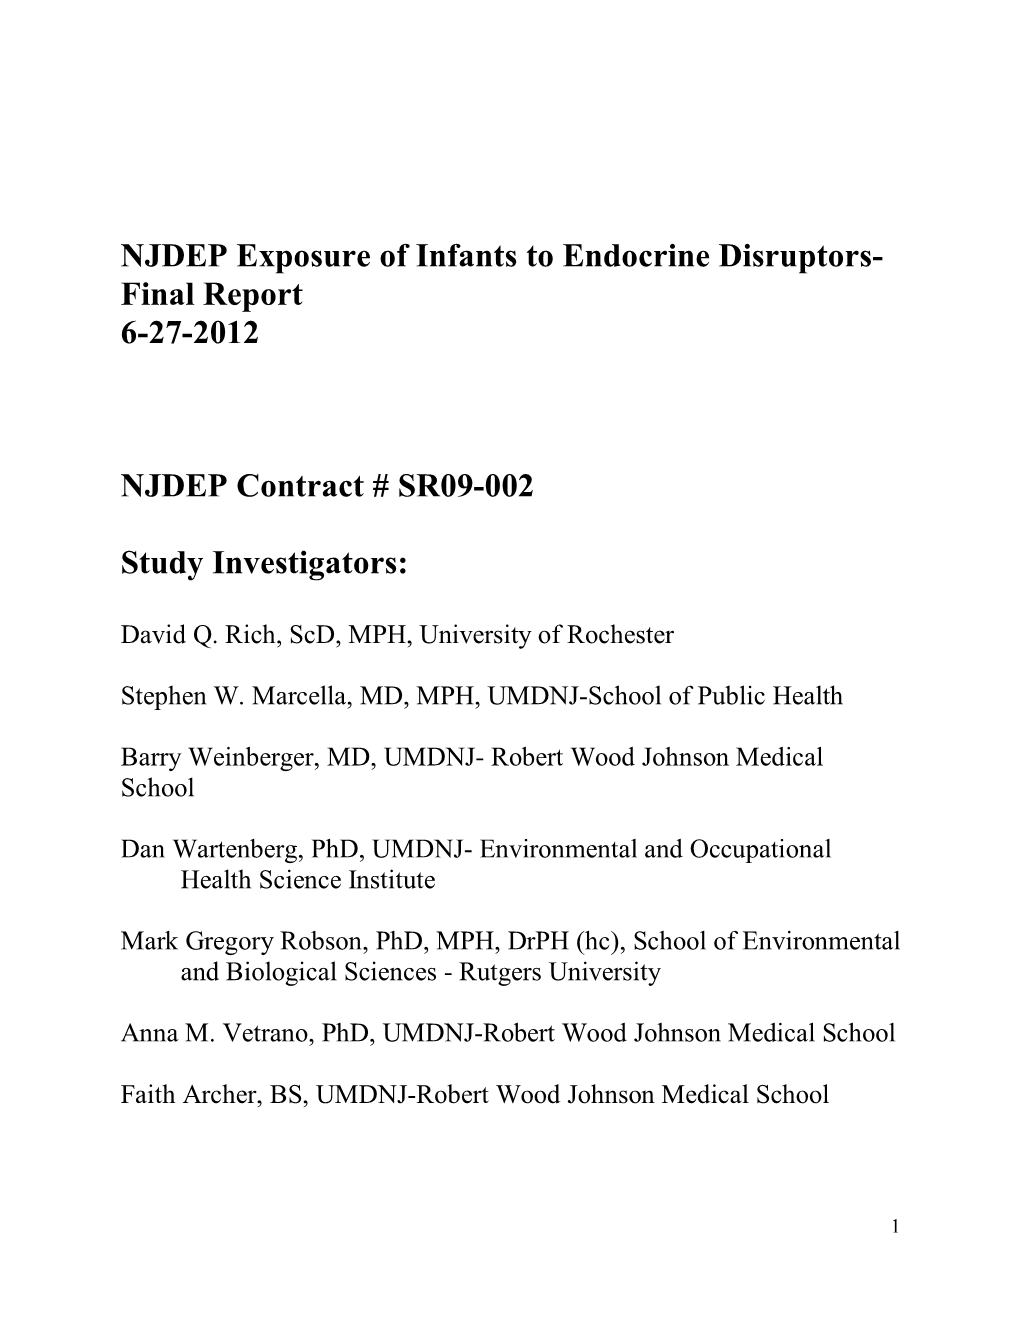 Exposure of Infants to Endocrine Disruptors- Final Report 6-27-2012